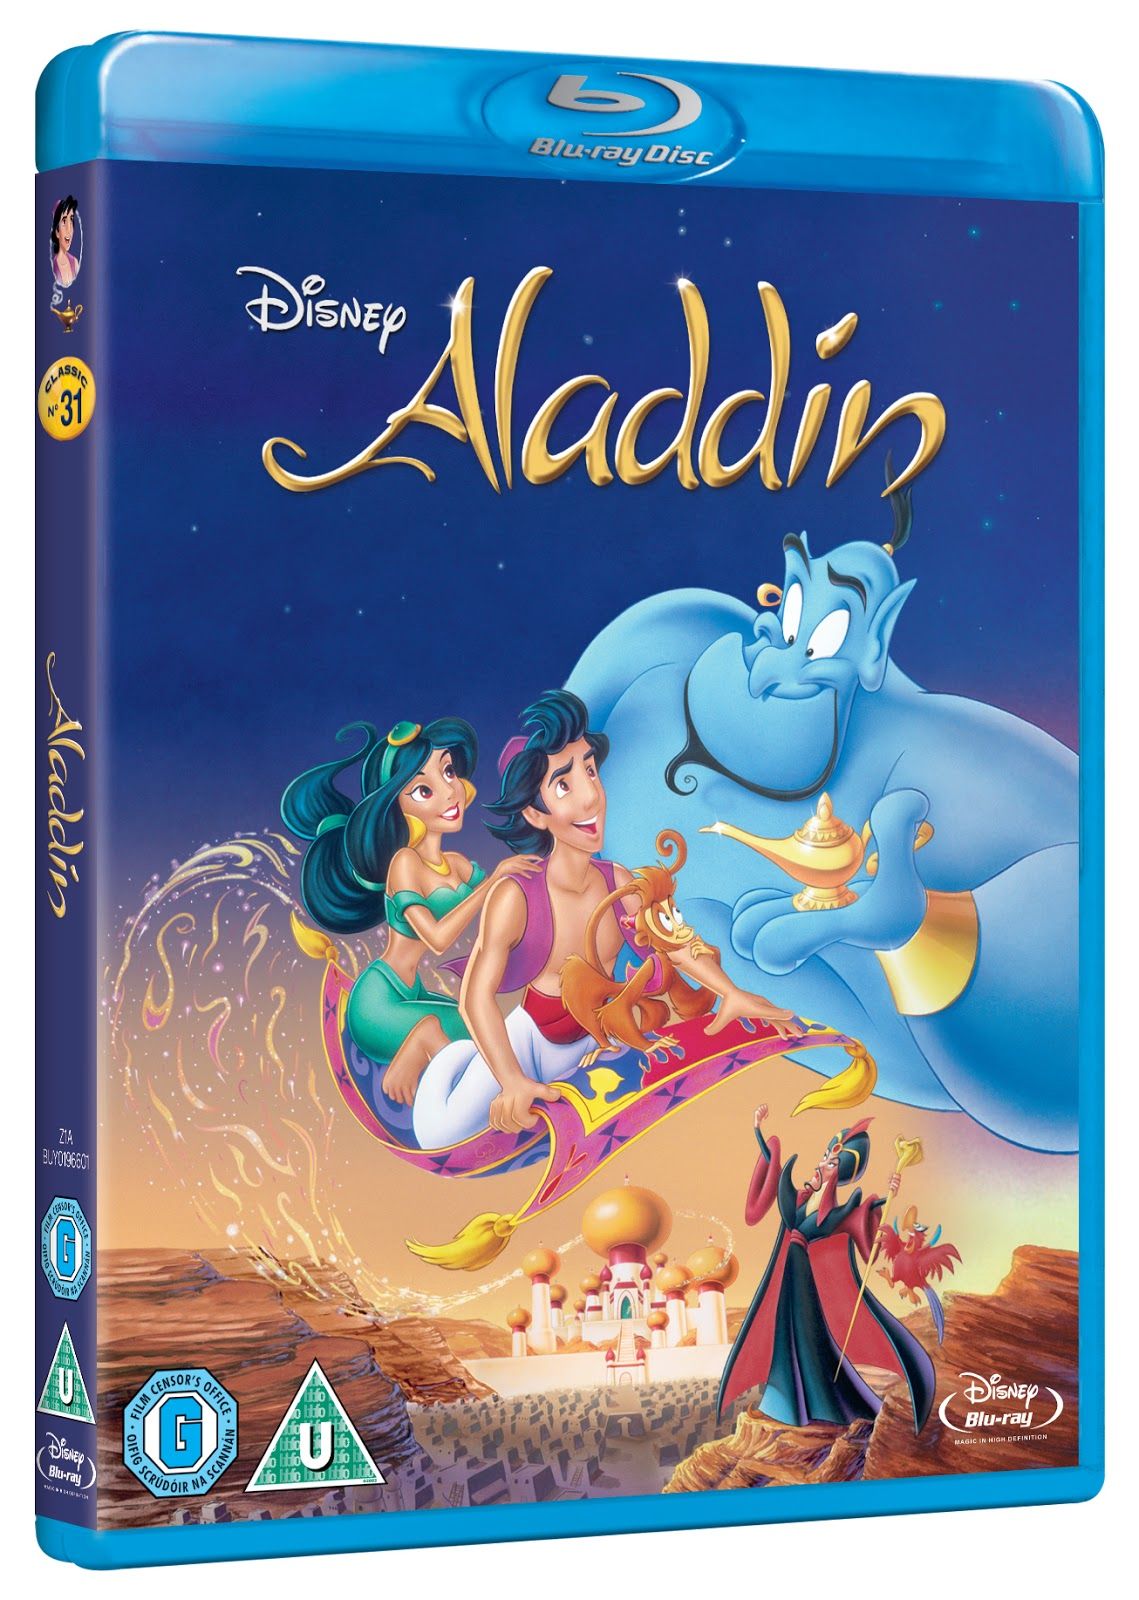 Aladdin dvd cover picture, Aladdin dvd cover image, Aladdin dvd ...